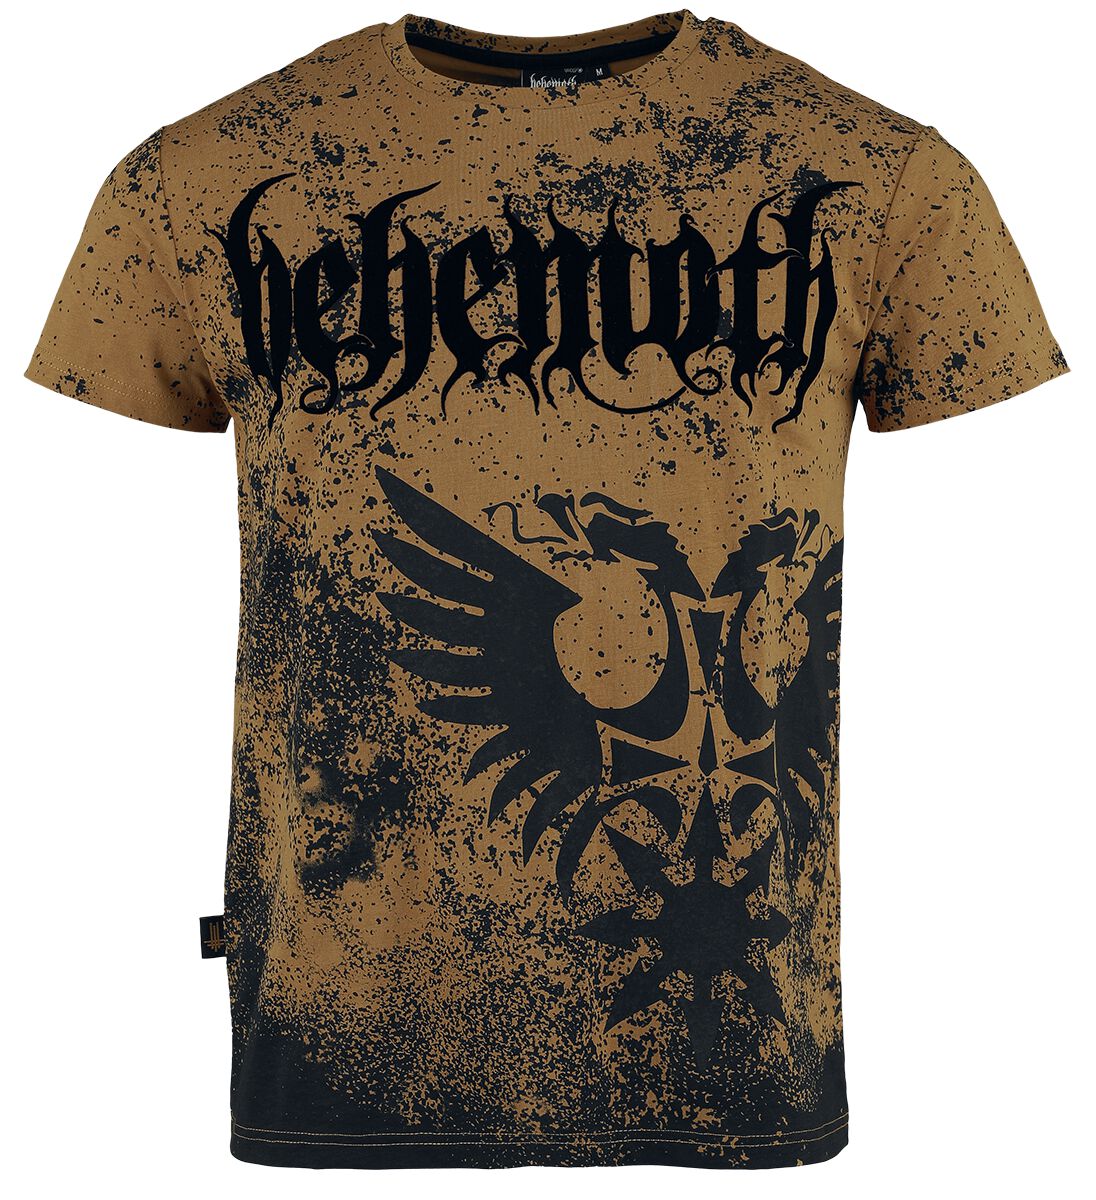 Behemoth T-Shirt - EMP Signature Collection - S bis XXL - für Männer - Größe M - braun/schwarz  - EMP exklusives Merchandise!